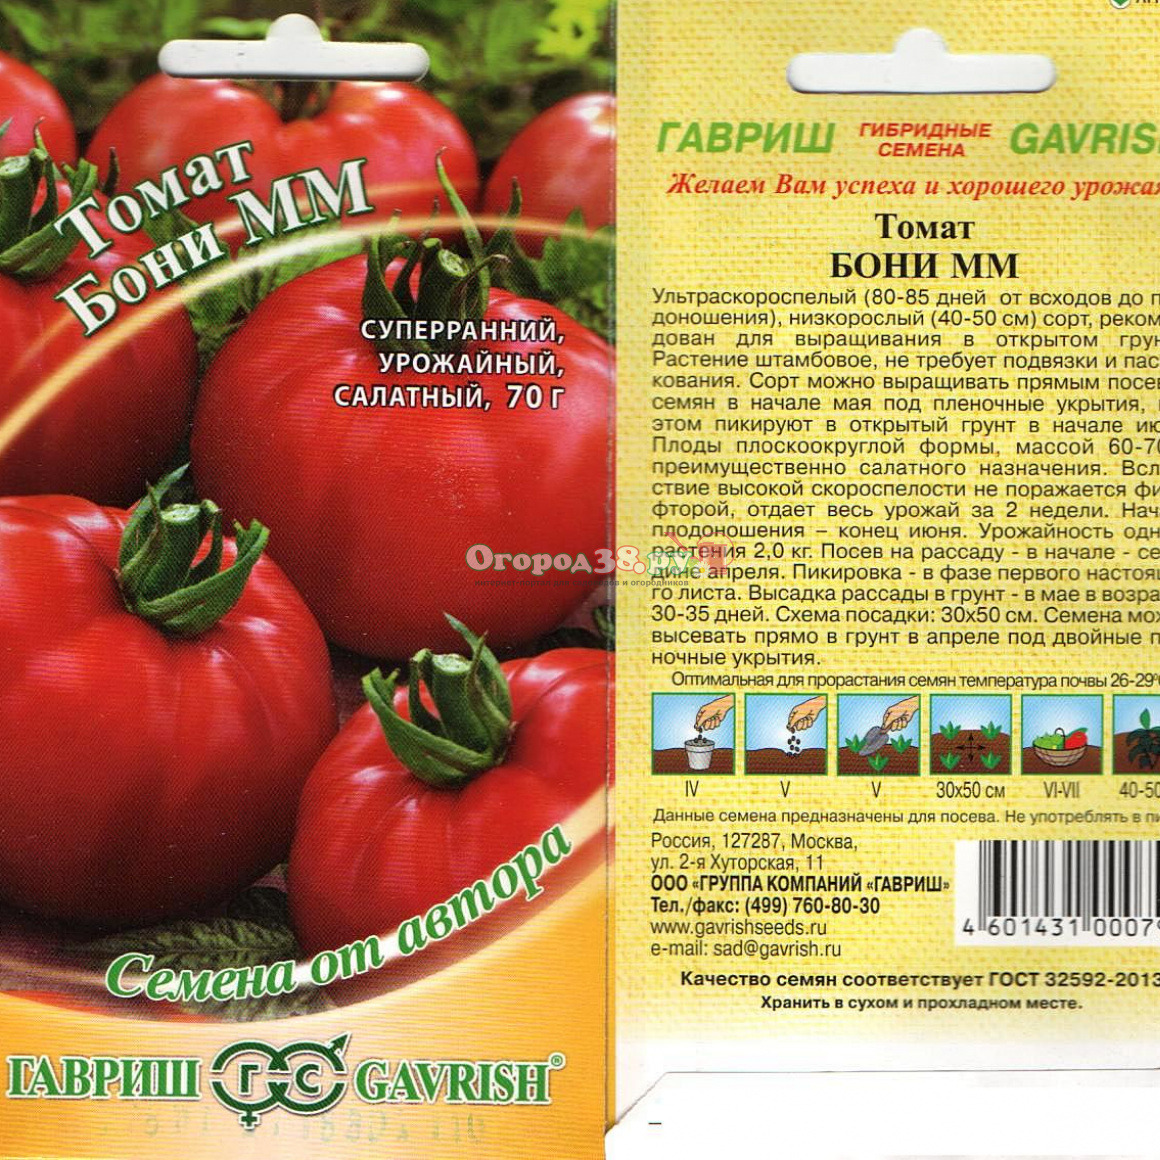 Томат деревенский f1: описание урожайного гибрида, правила выращивания для получения хорошего урожая